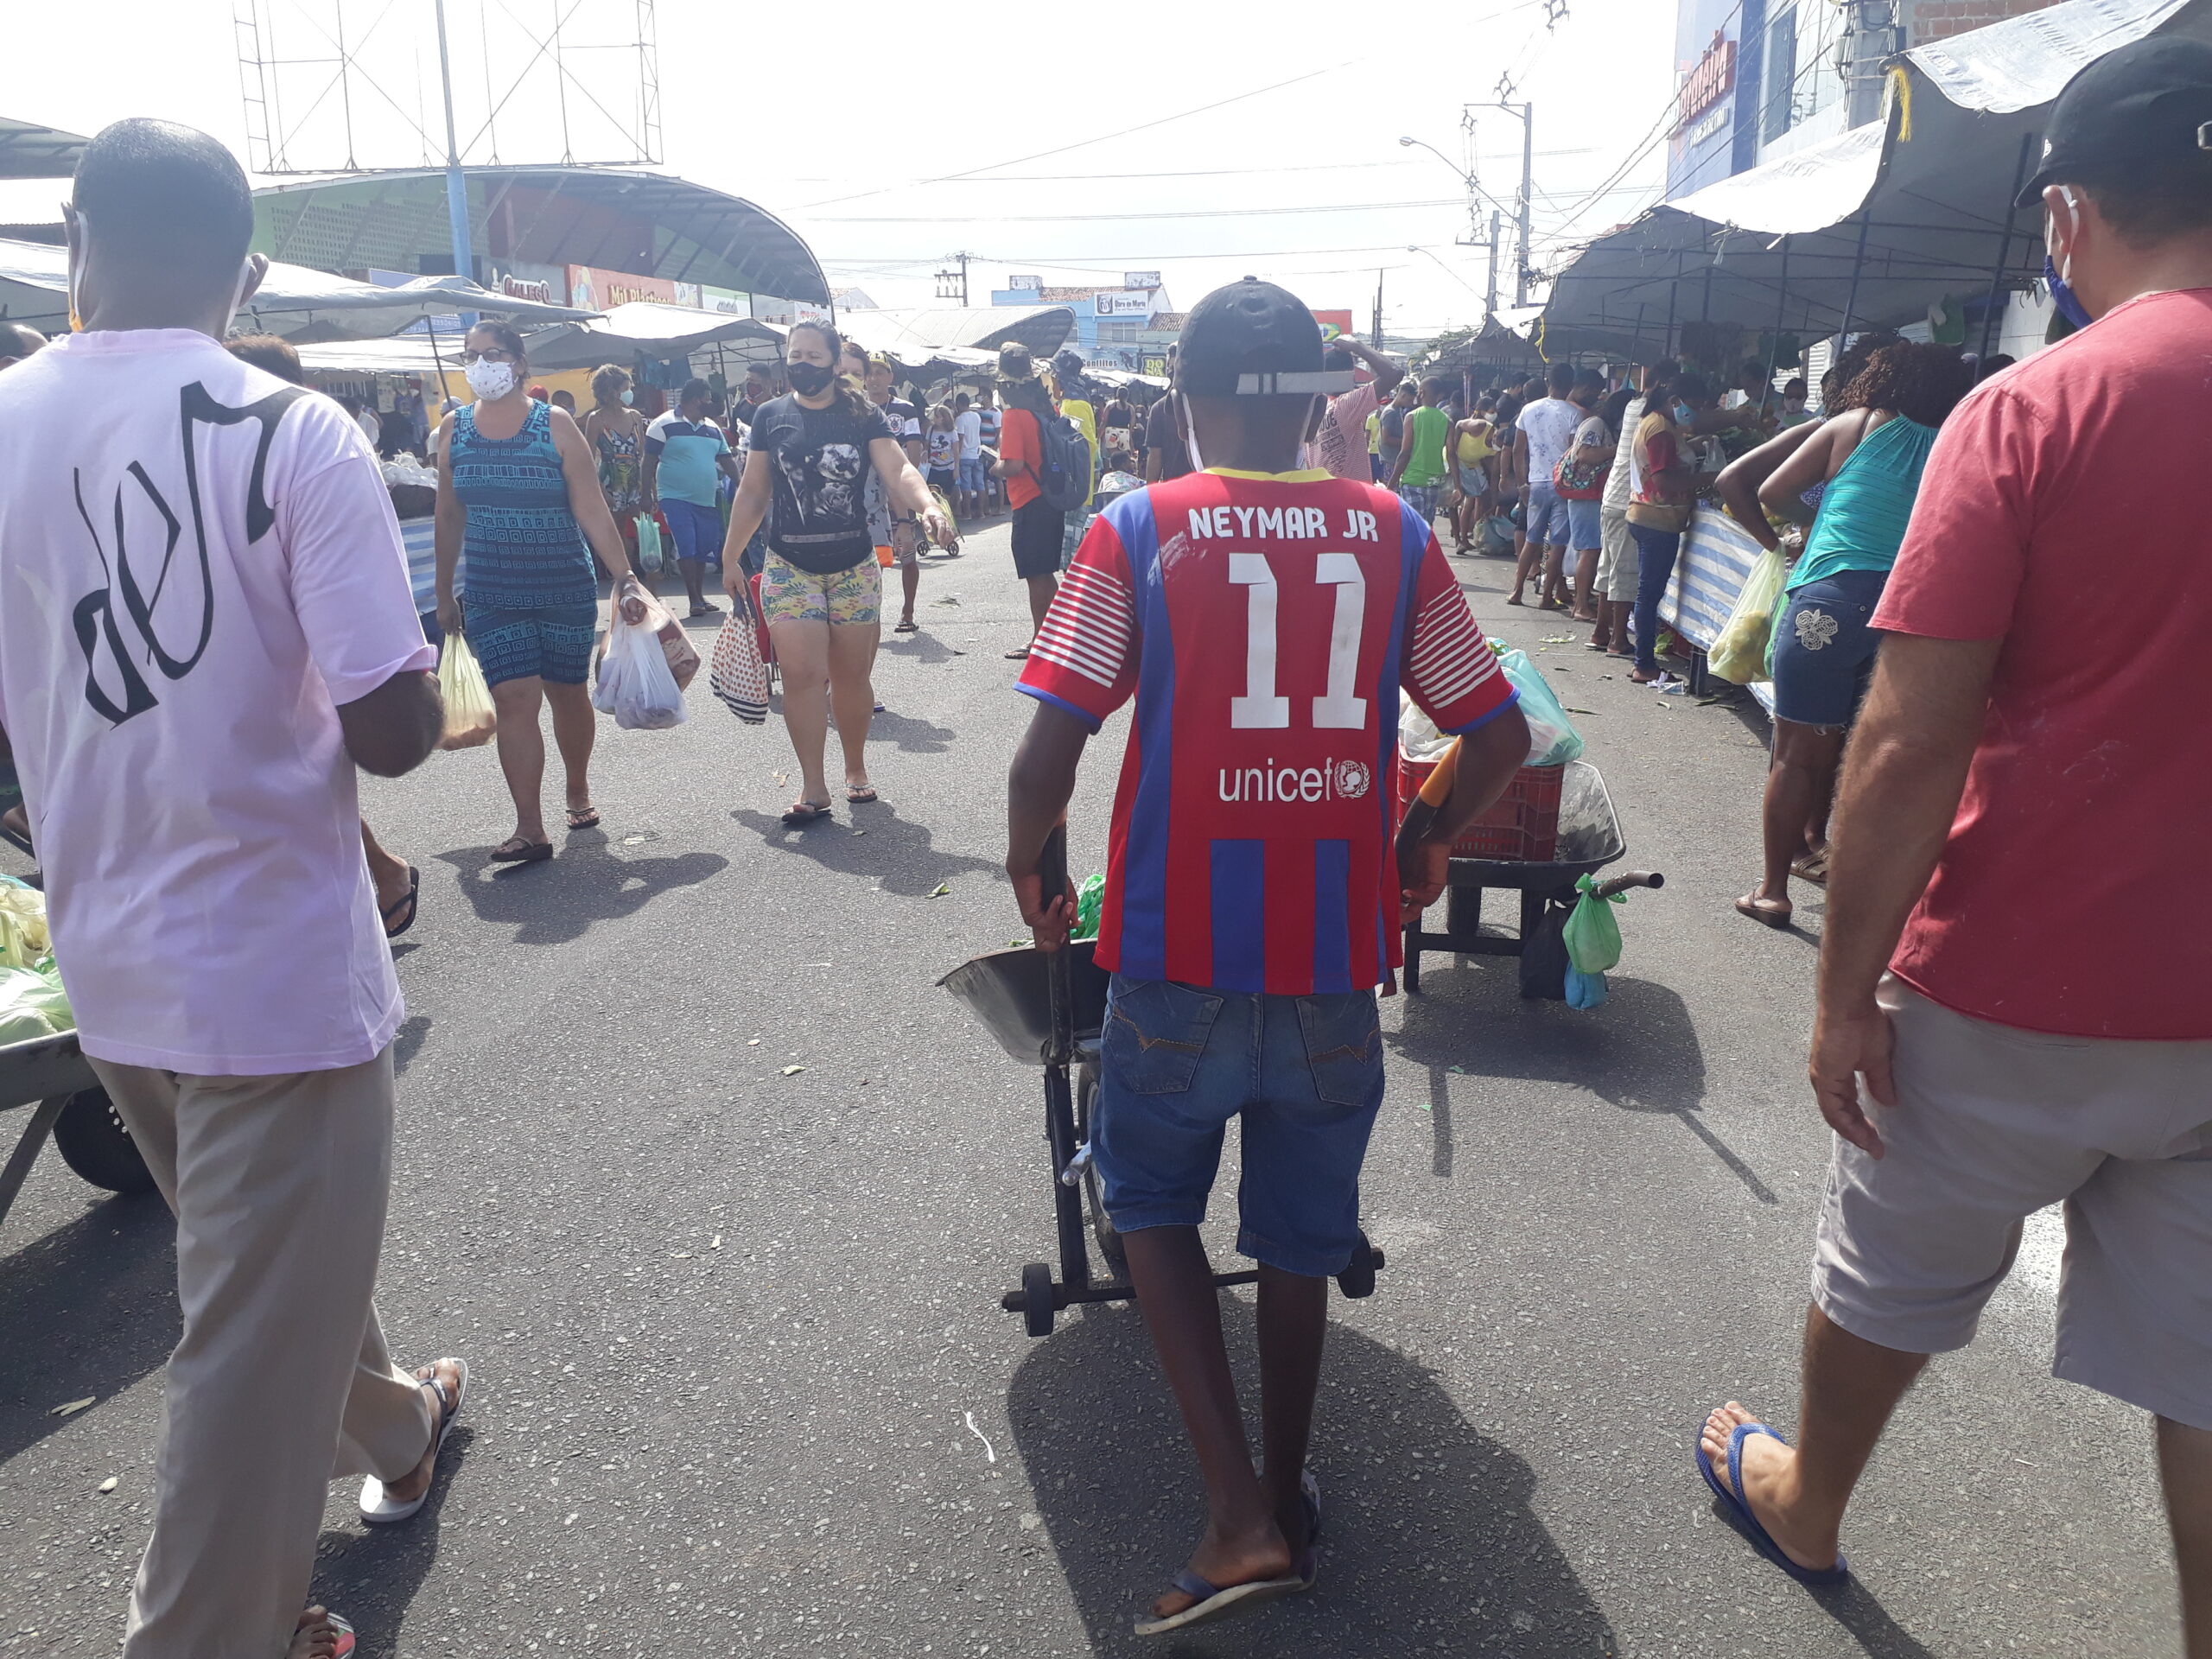 Trabalho infantil continua em feiras livres de Aracaju mesmo com a pandemia